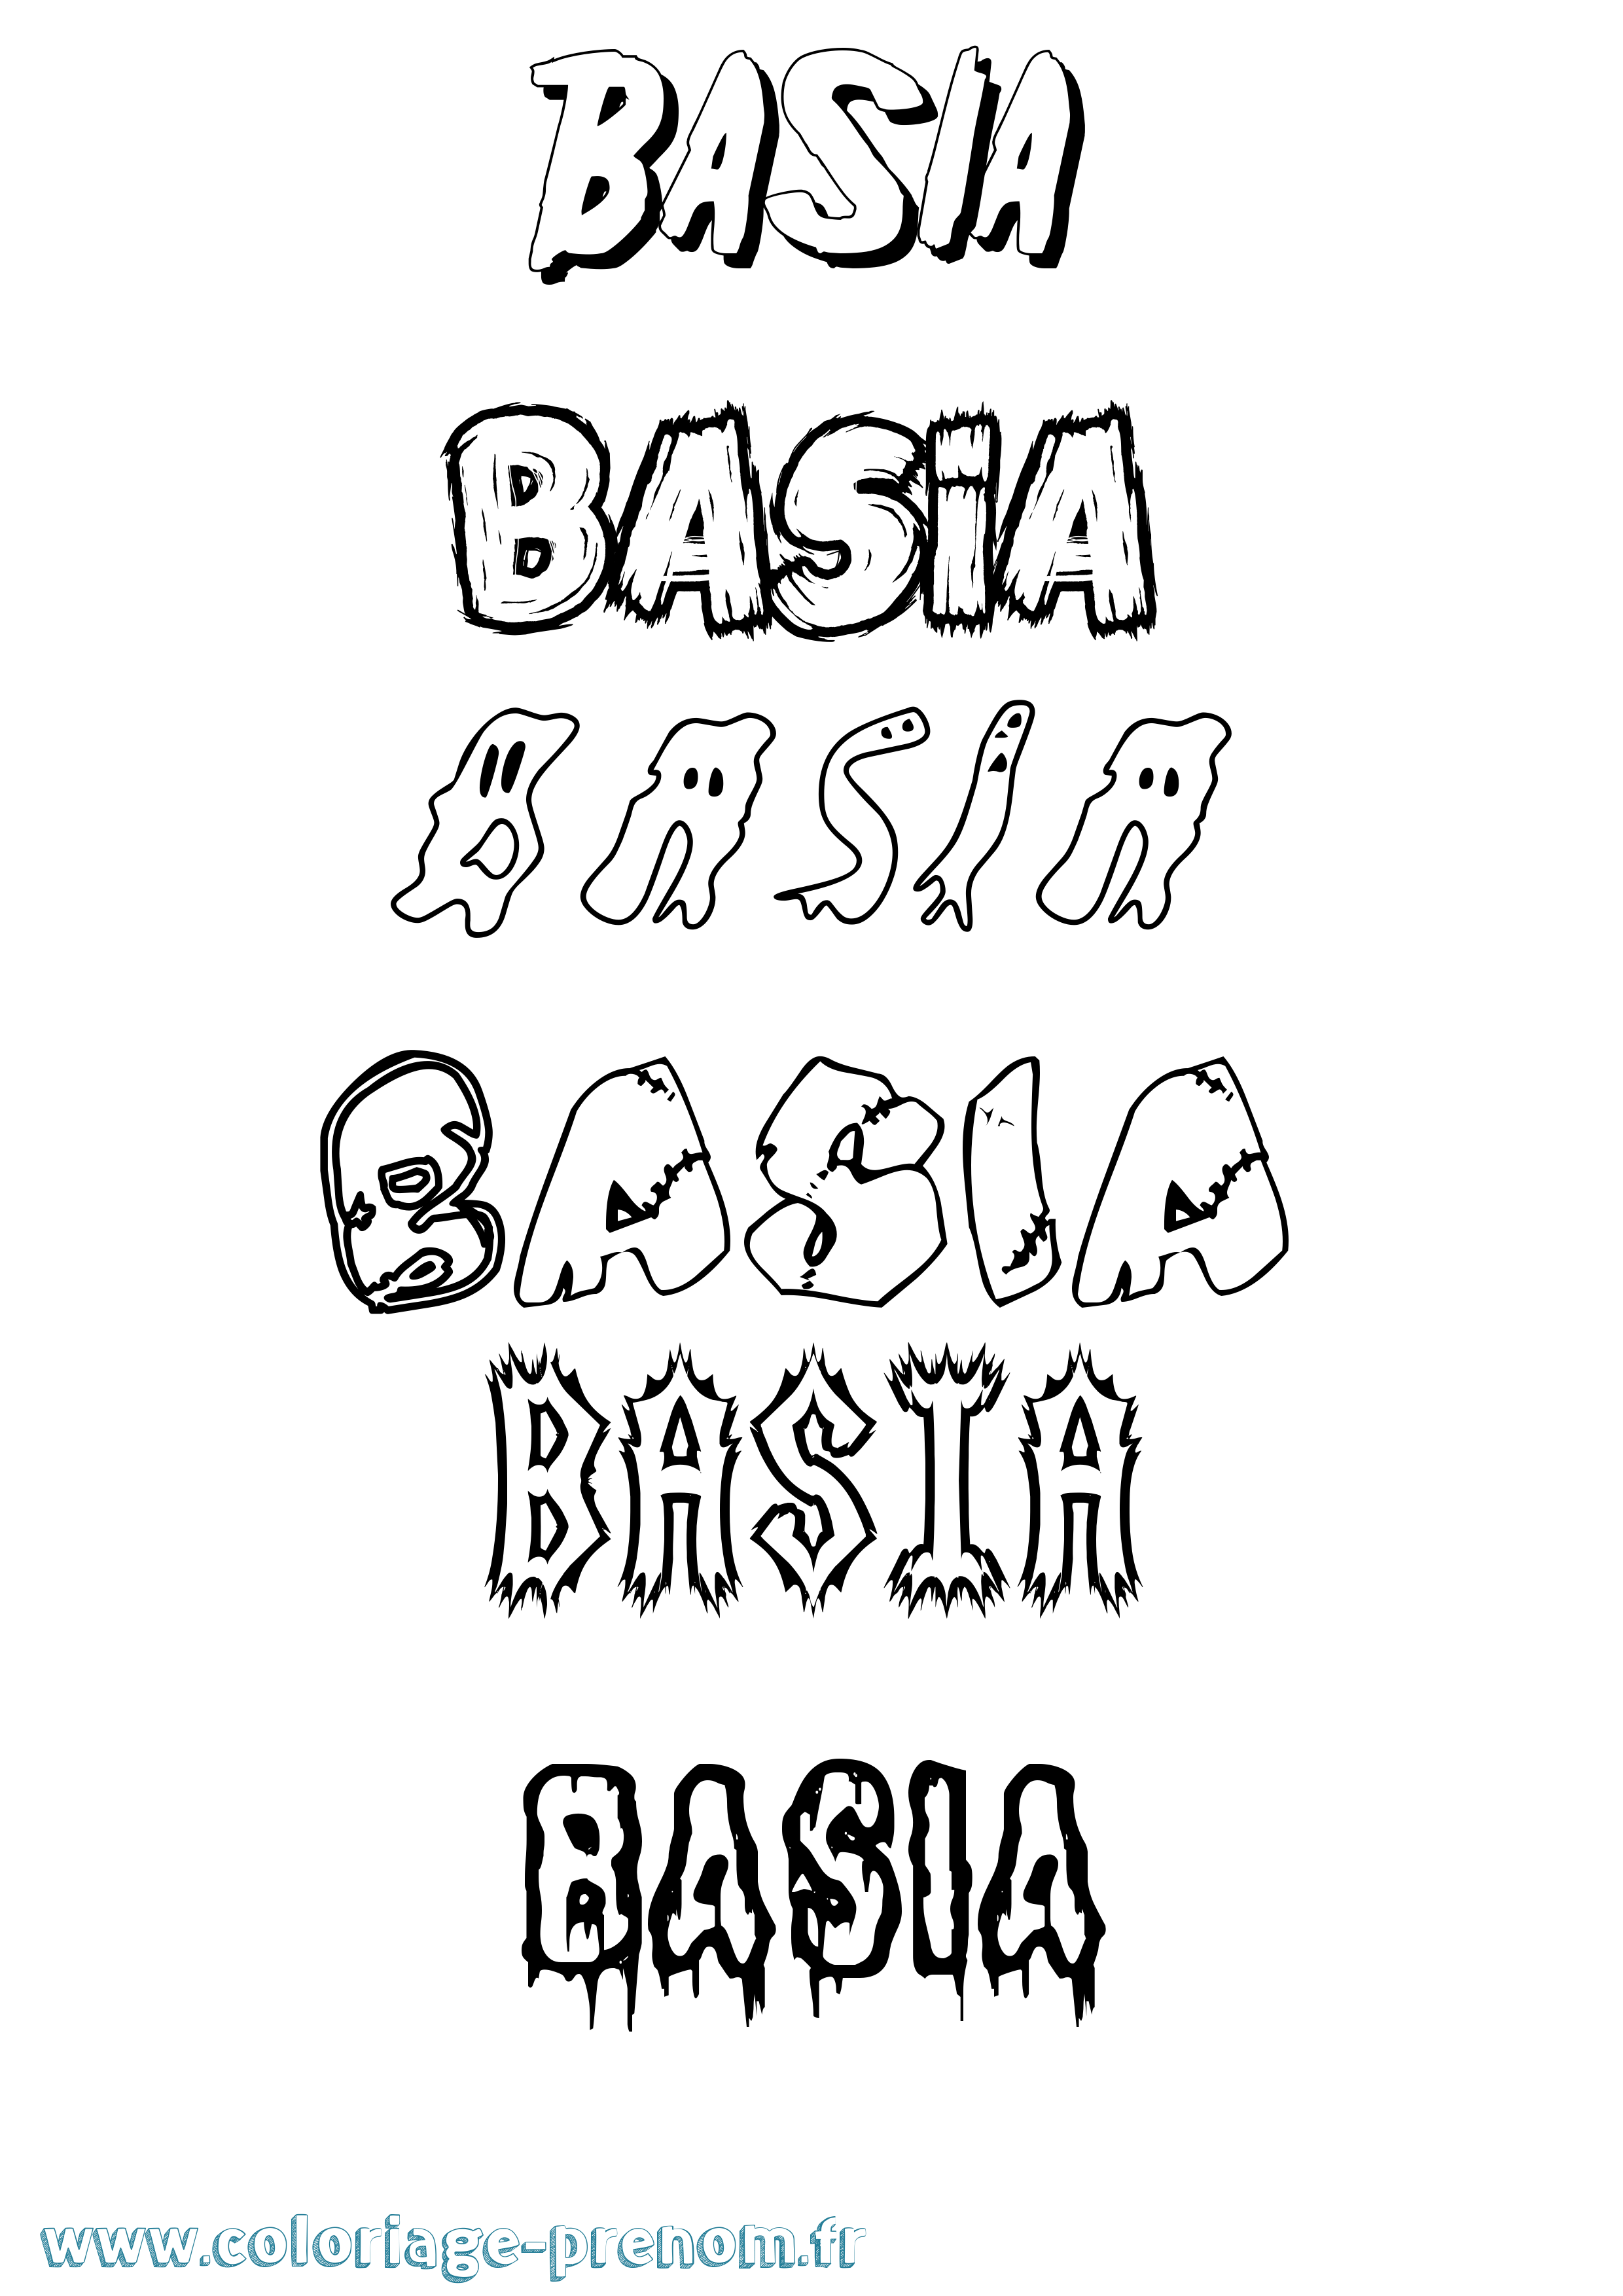 Coloriage prénom Basia Frisson